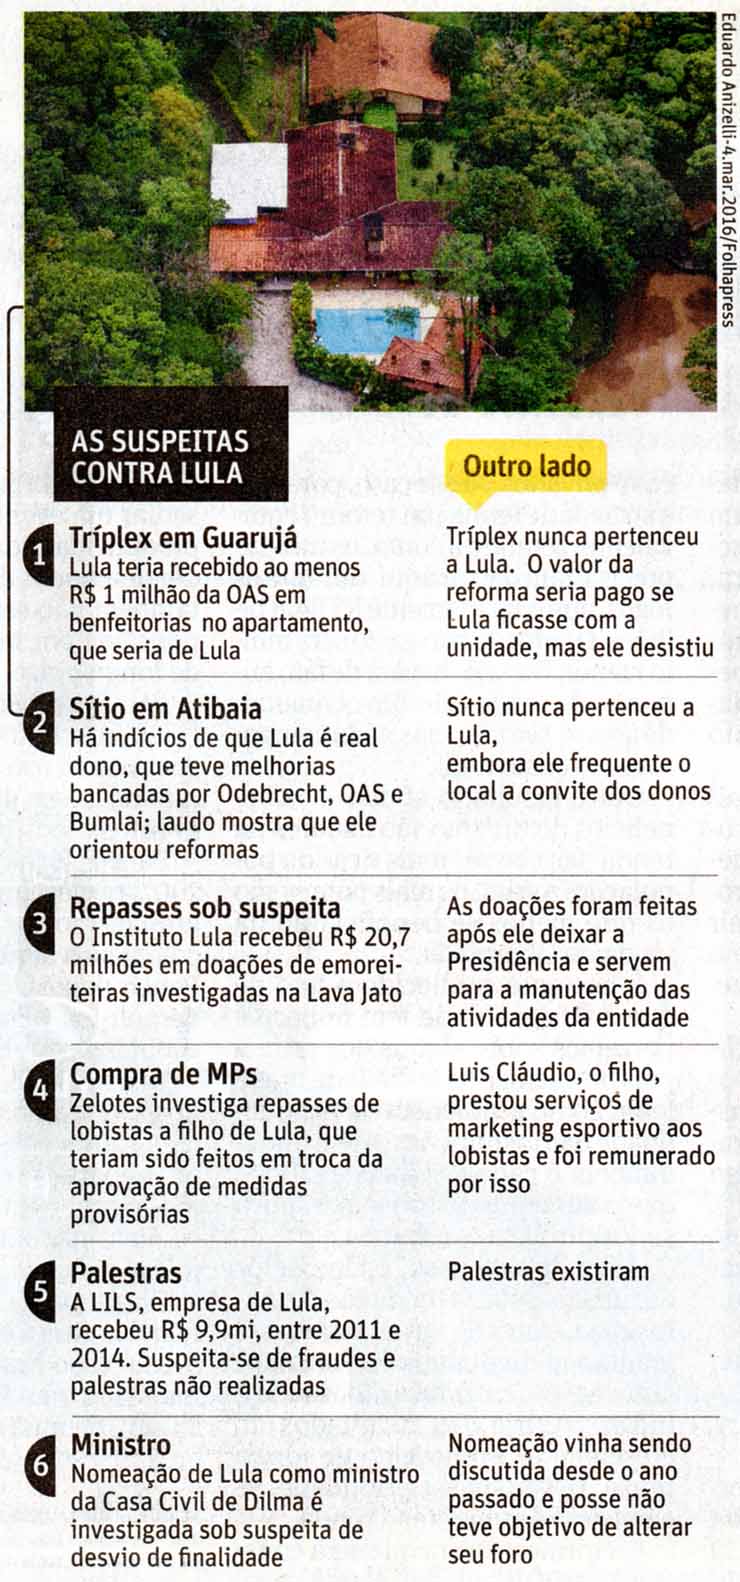 Lula: As suspeitas -  Infogrfico Folha de So Paulo 30.07.2016